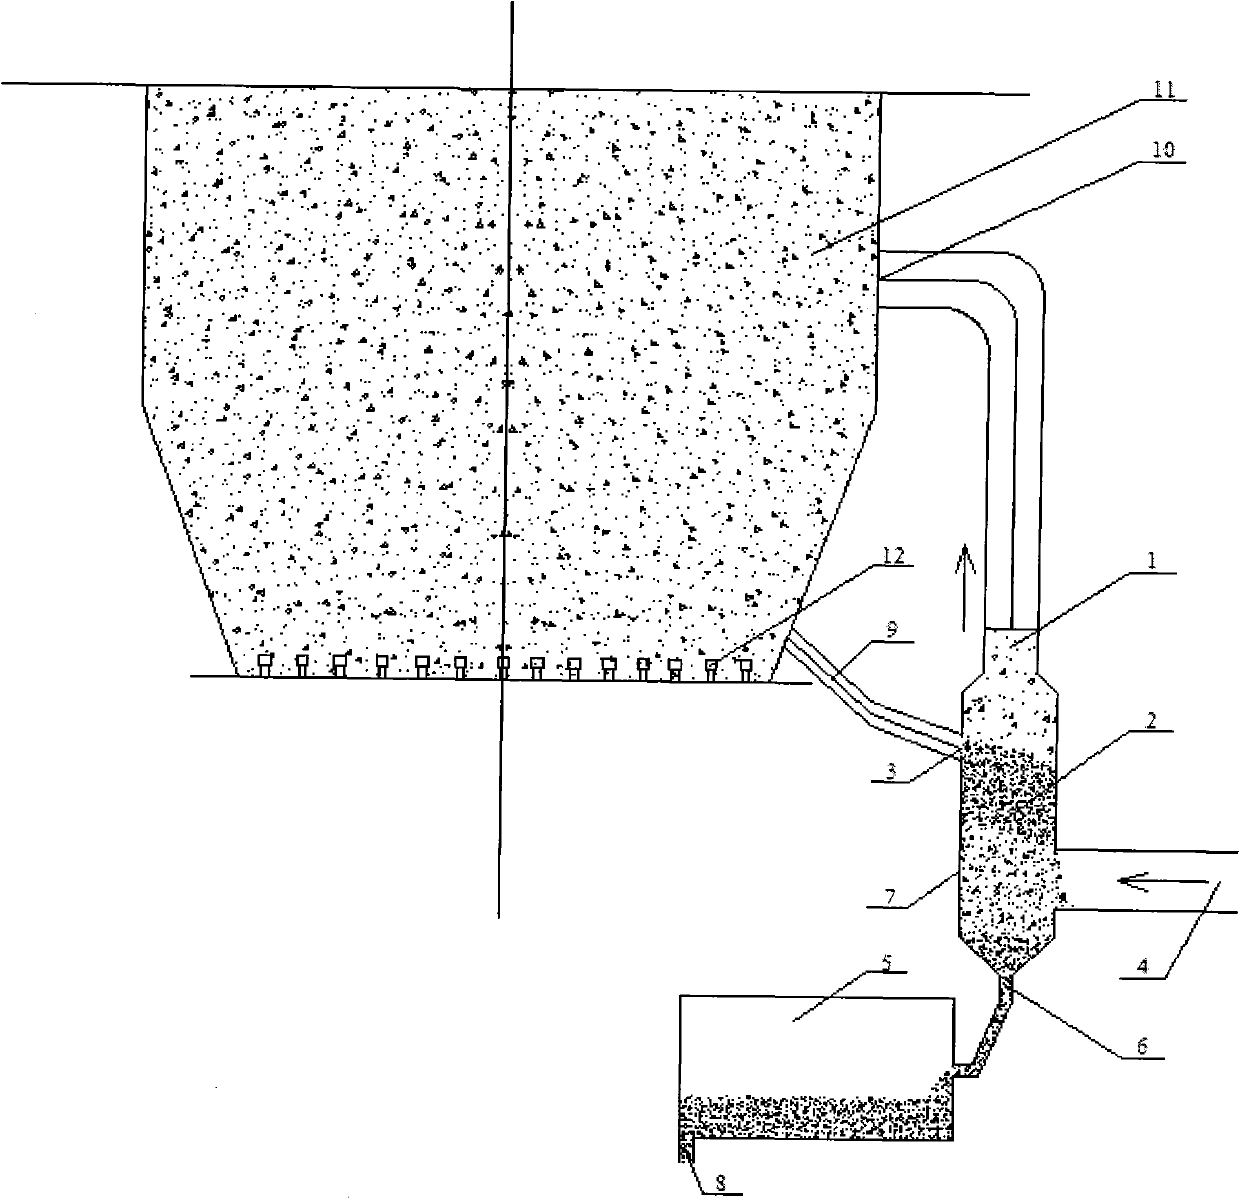 Circulating fluidized bed boiler bottom slag cooling system